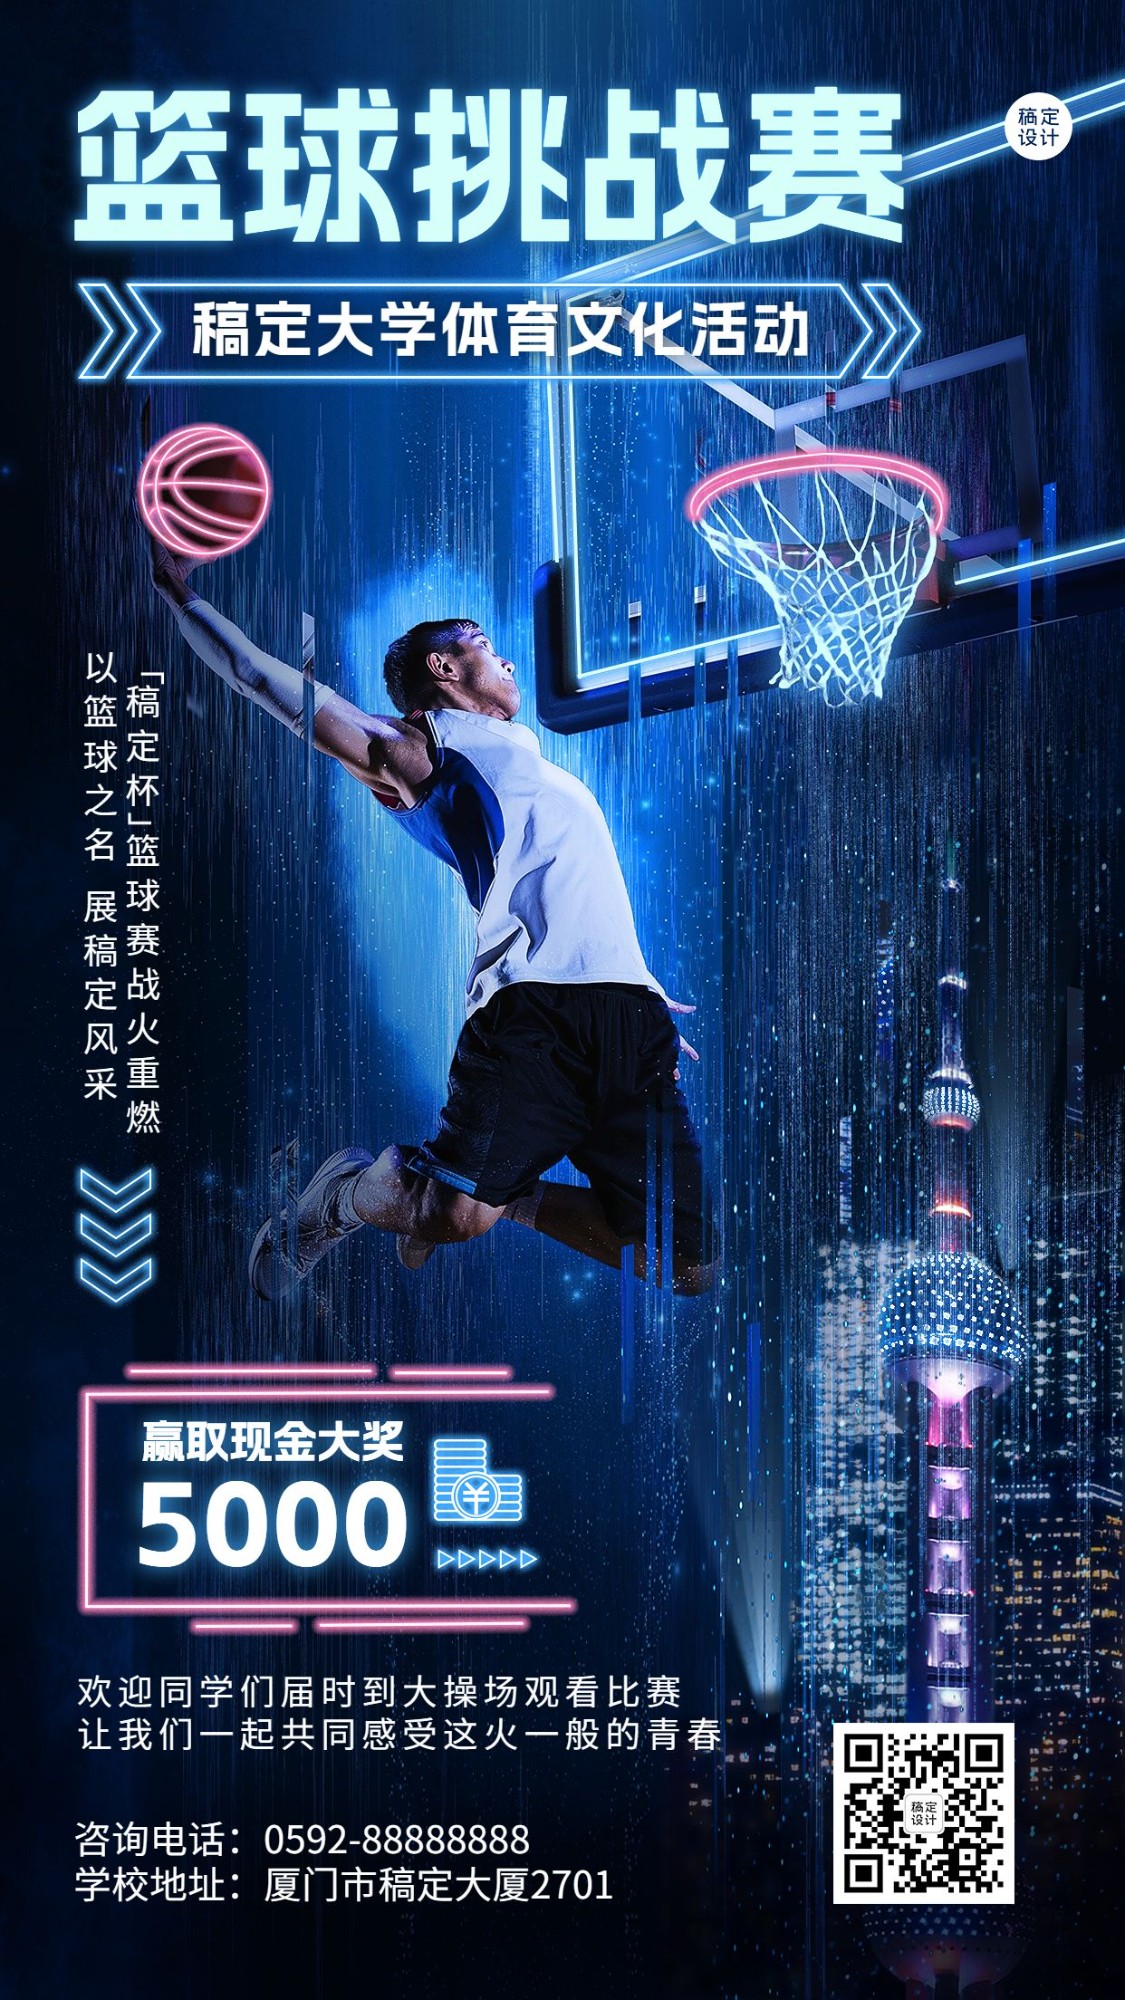 高校篮球比赛活动宣传炫酷风格手机海报